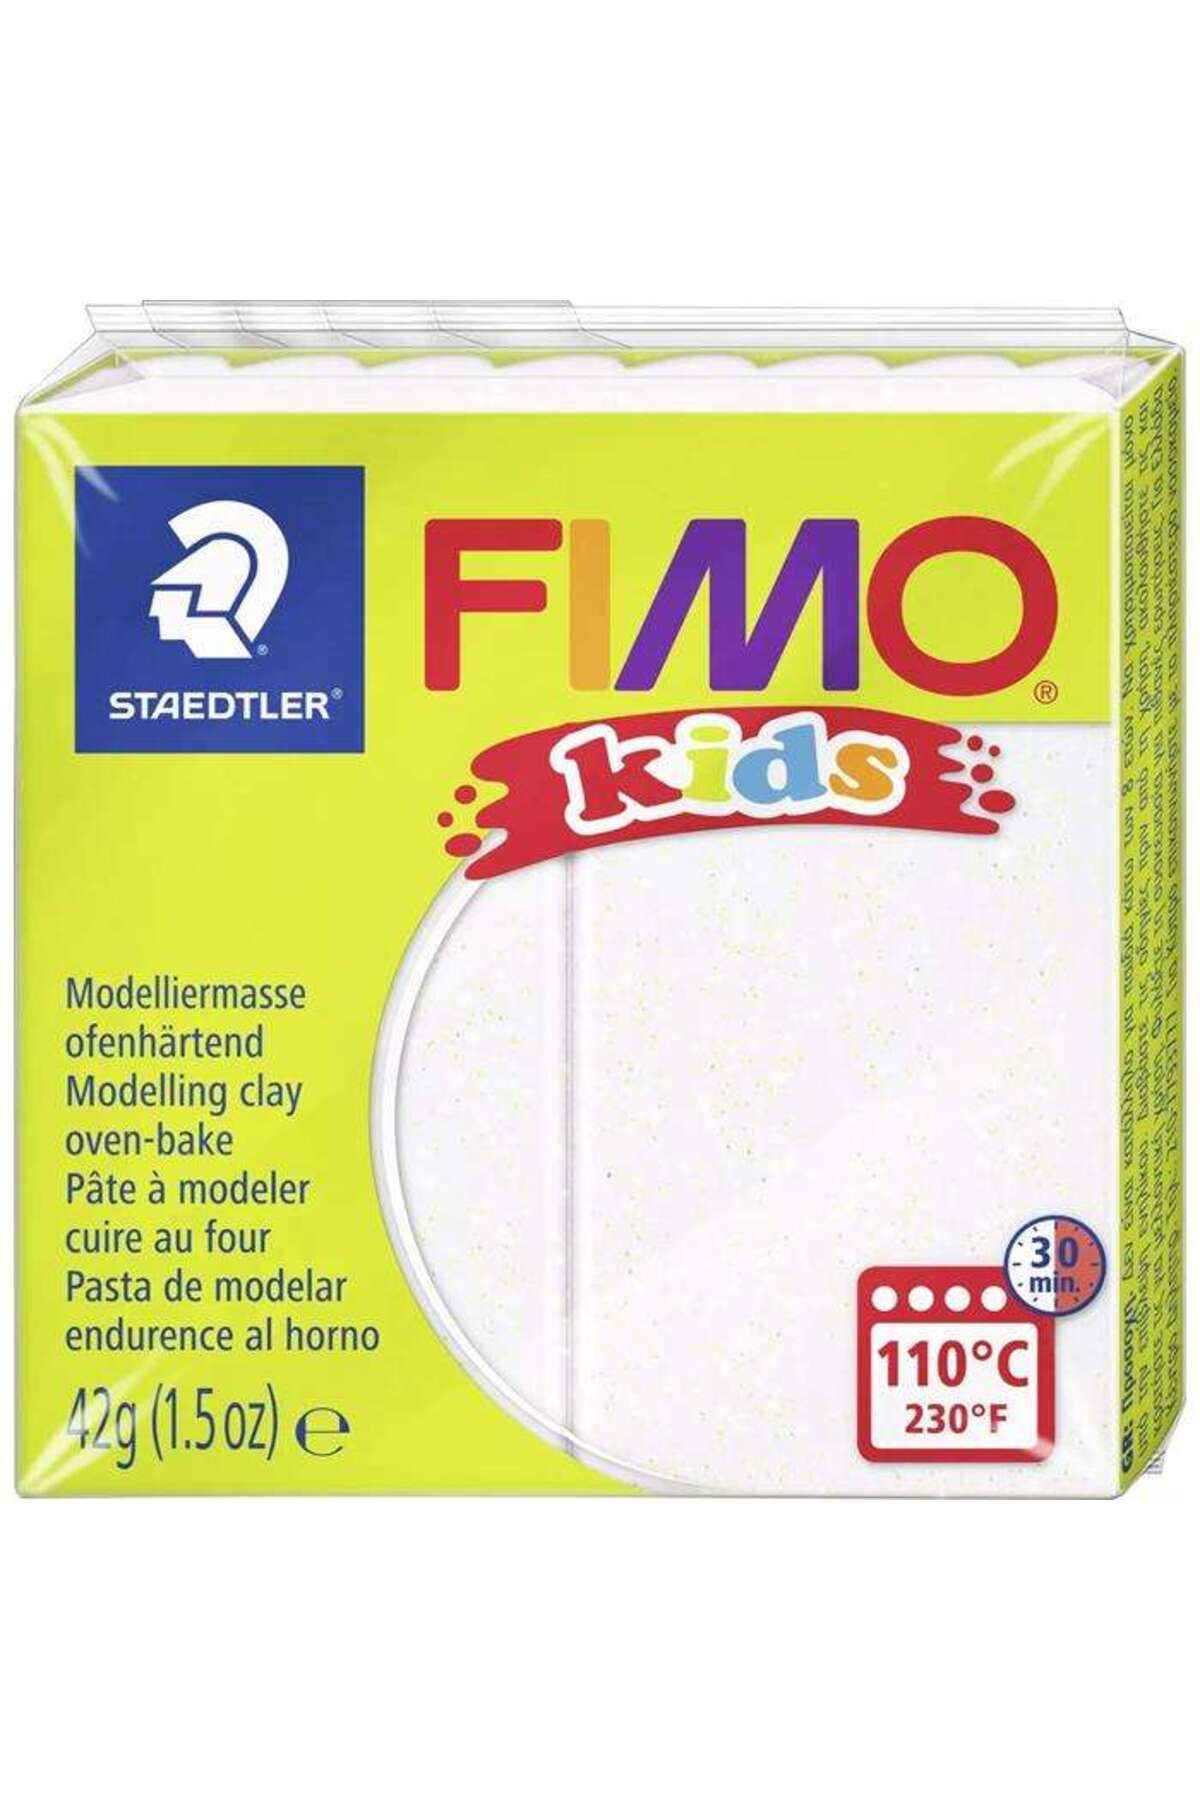 Staedtler Fimo Kids Modelleme Kili 42 g White 0